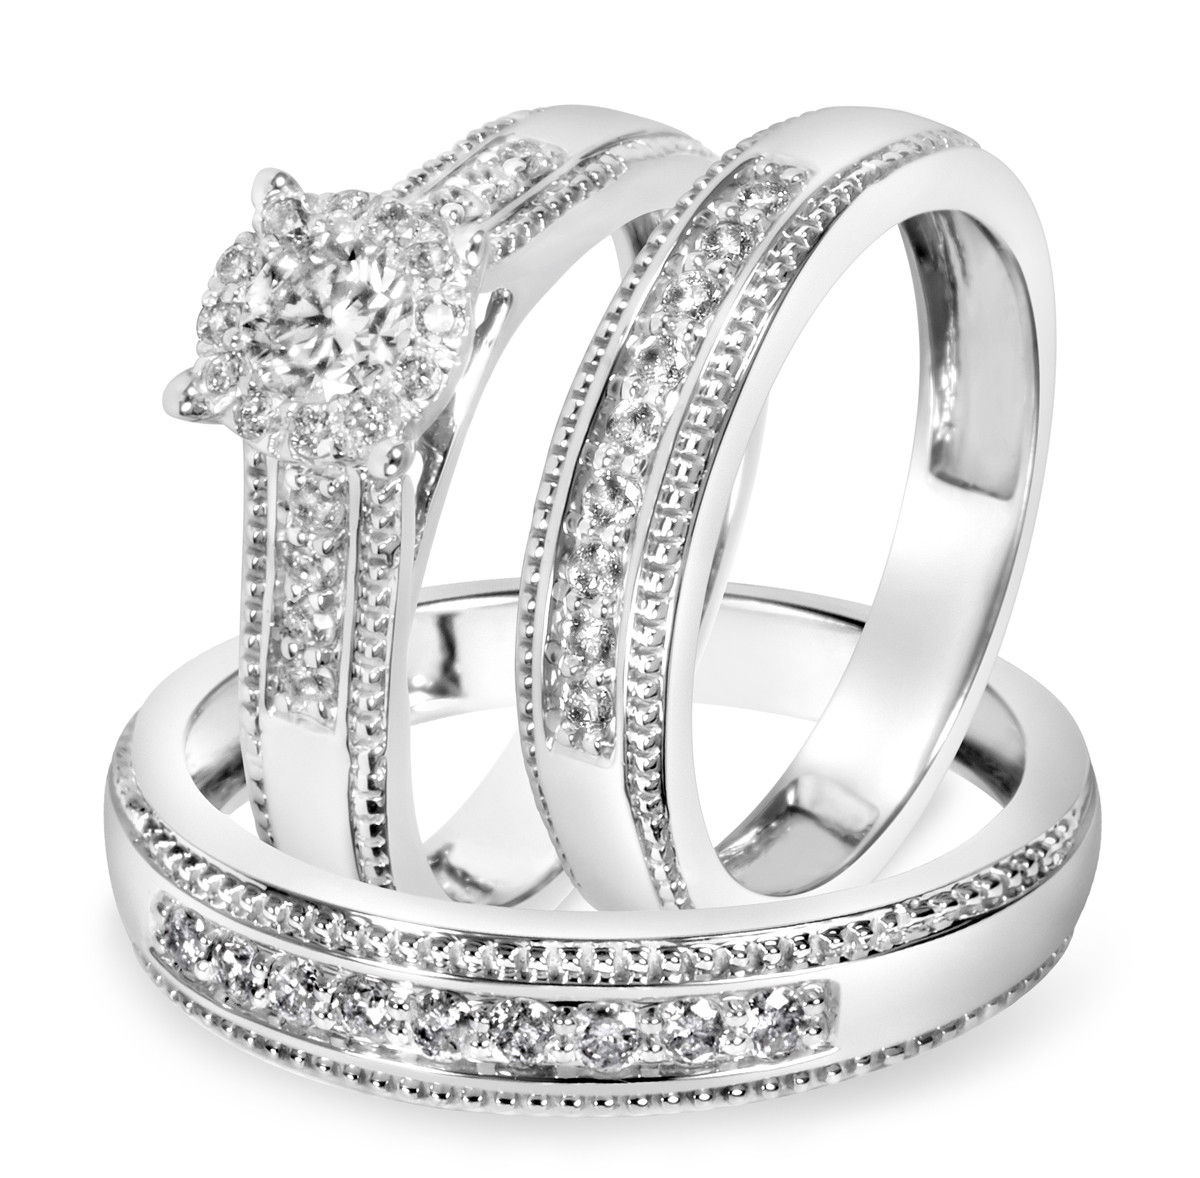 White Gold Wedding Ring Sets
 7 8 Carat T W Diamond Trio Matching Wedding Ring Set 14K